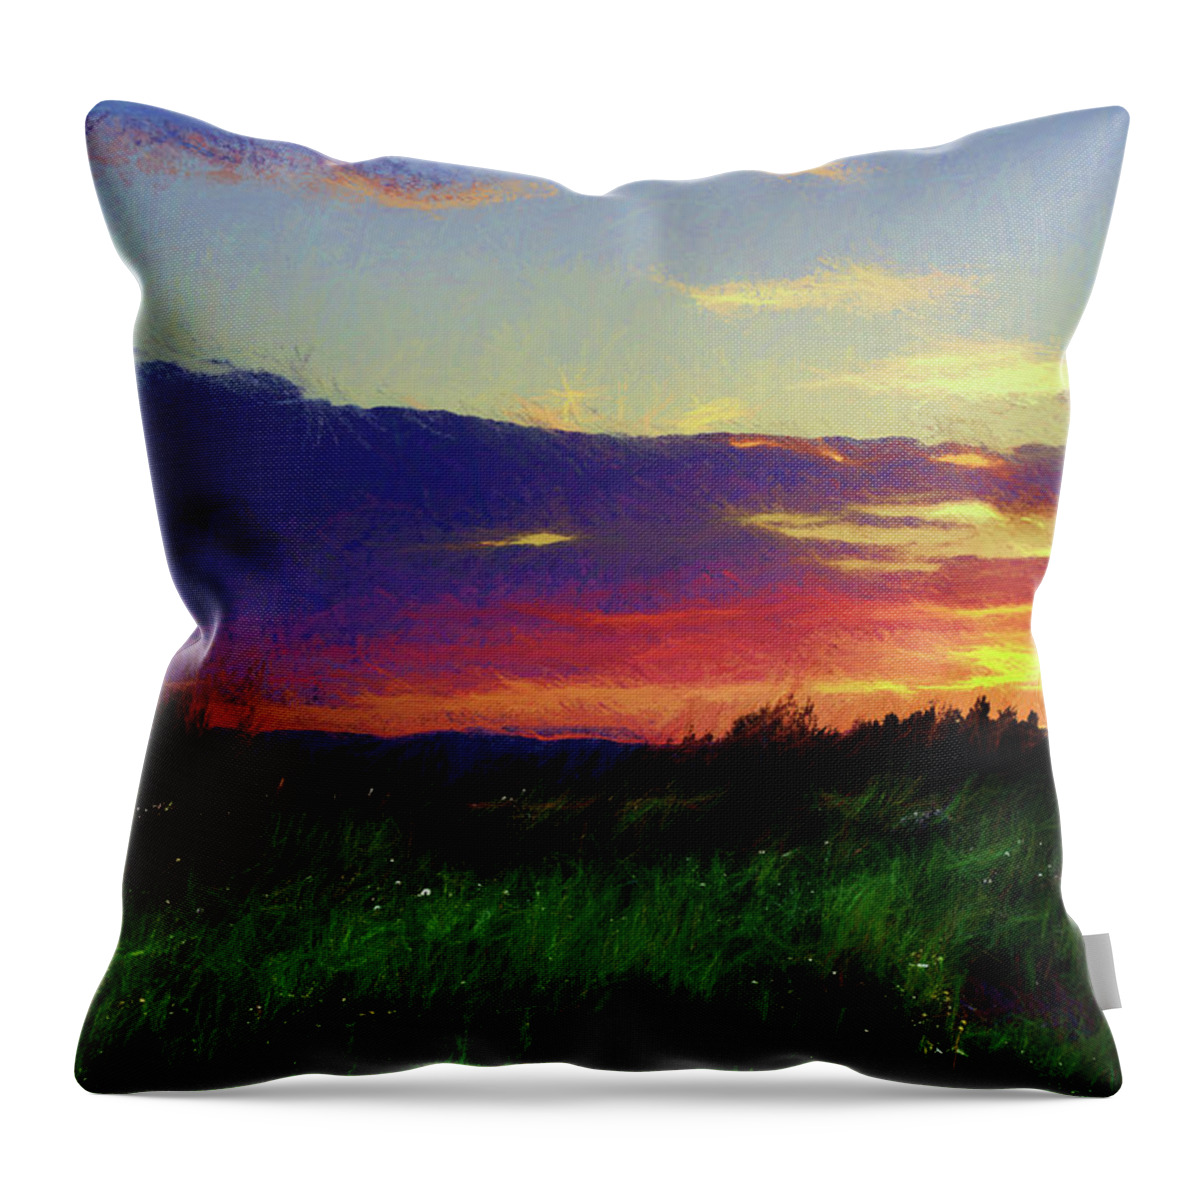 Sunset Throw Pillow featuring the digital art Quebec Sunset by Scott Carlton